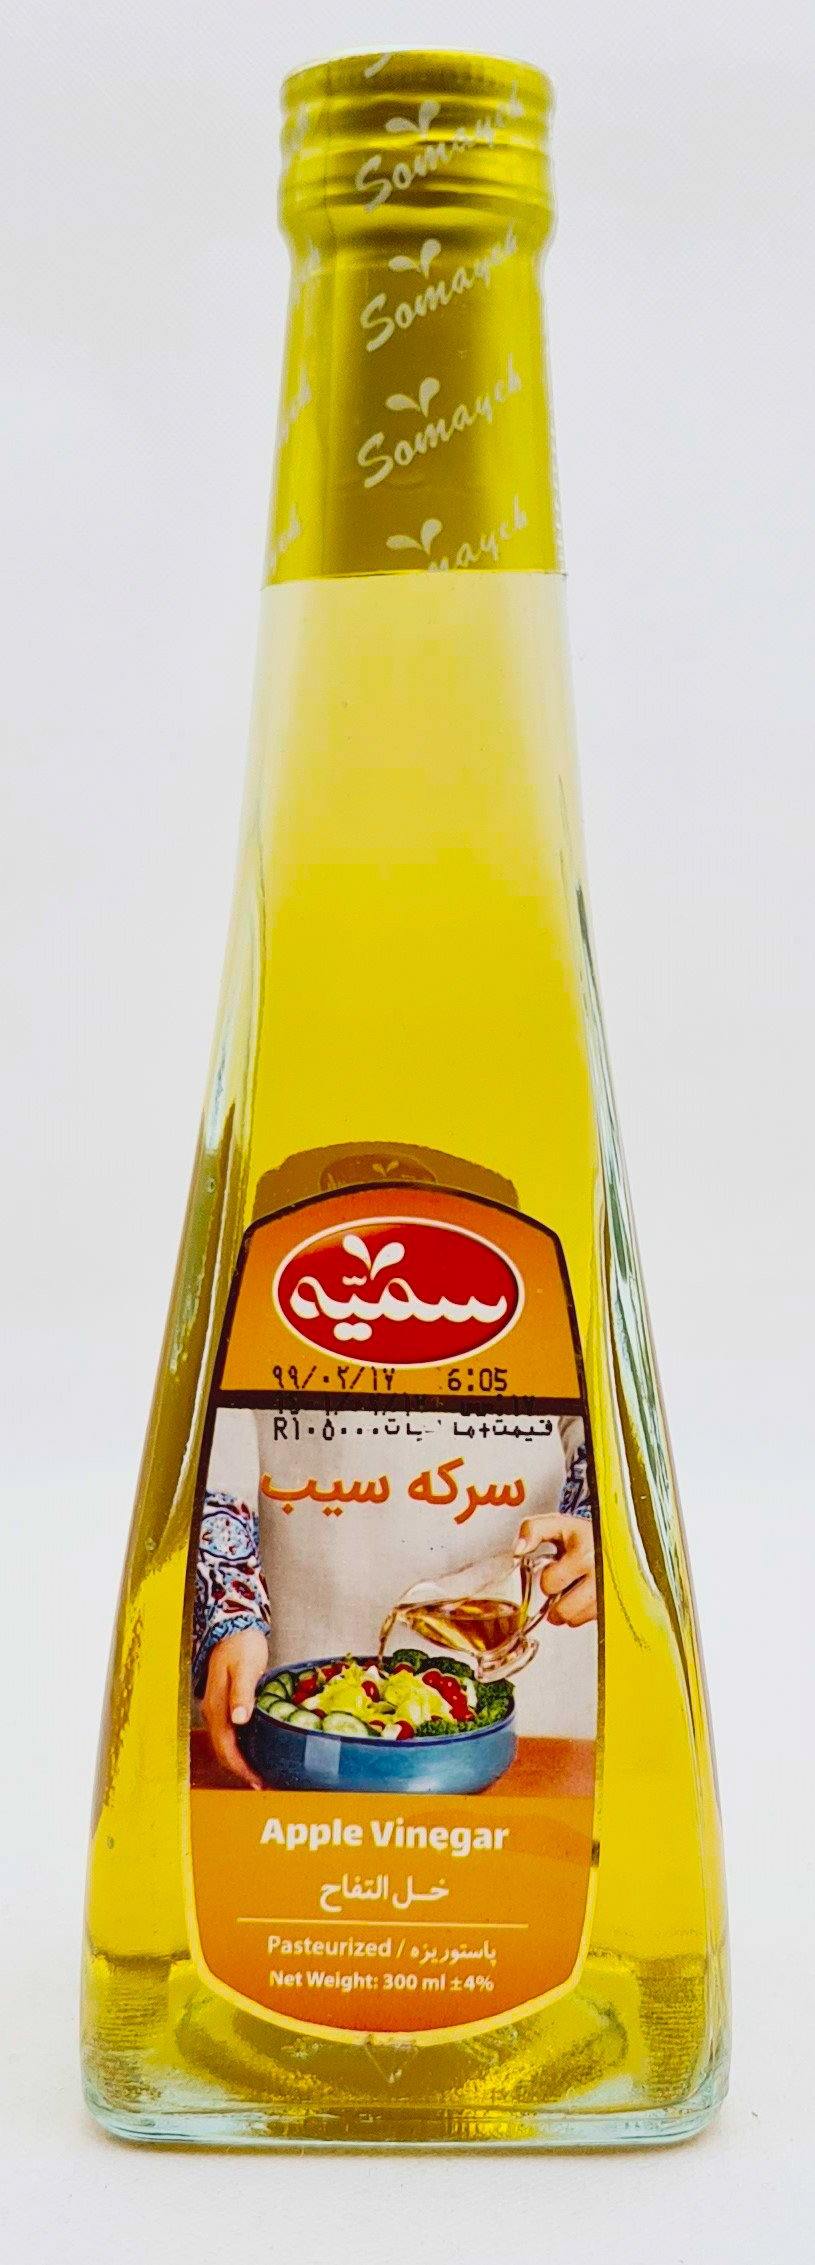 Somayeh Serkeh Sib - Apfelessig 300ml - Persienmarkt